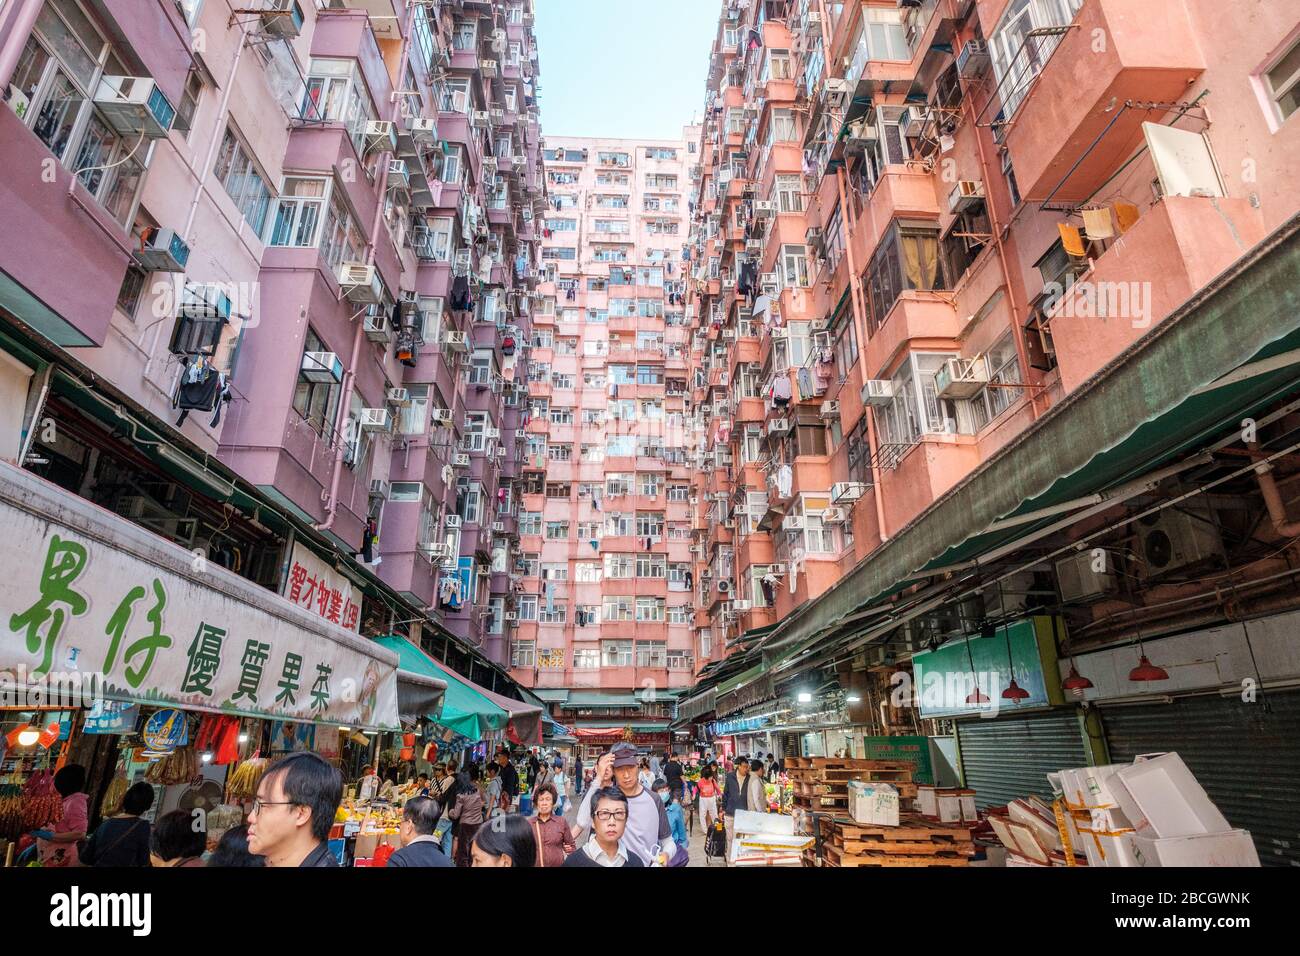 Hong Kong, China - November, 2019: People on street food market in Hong Kong Stock Photo